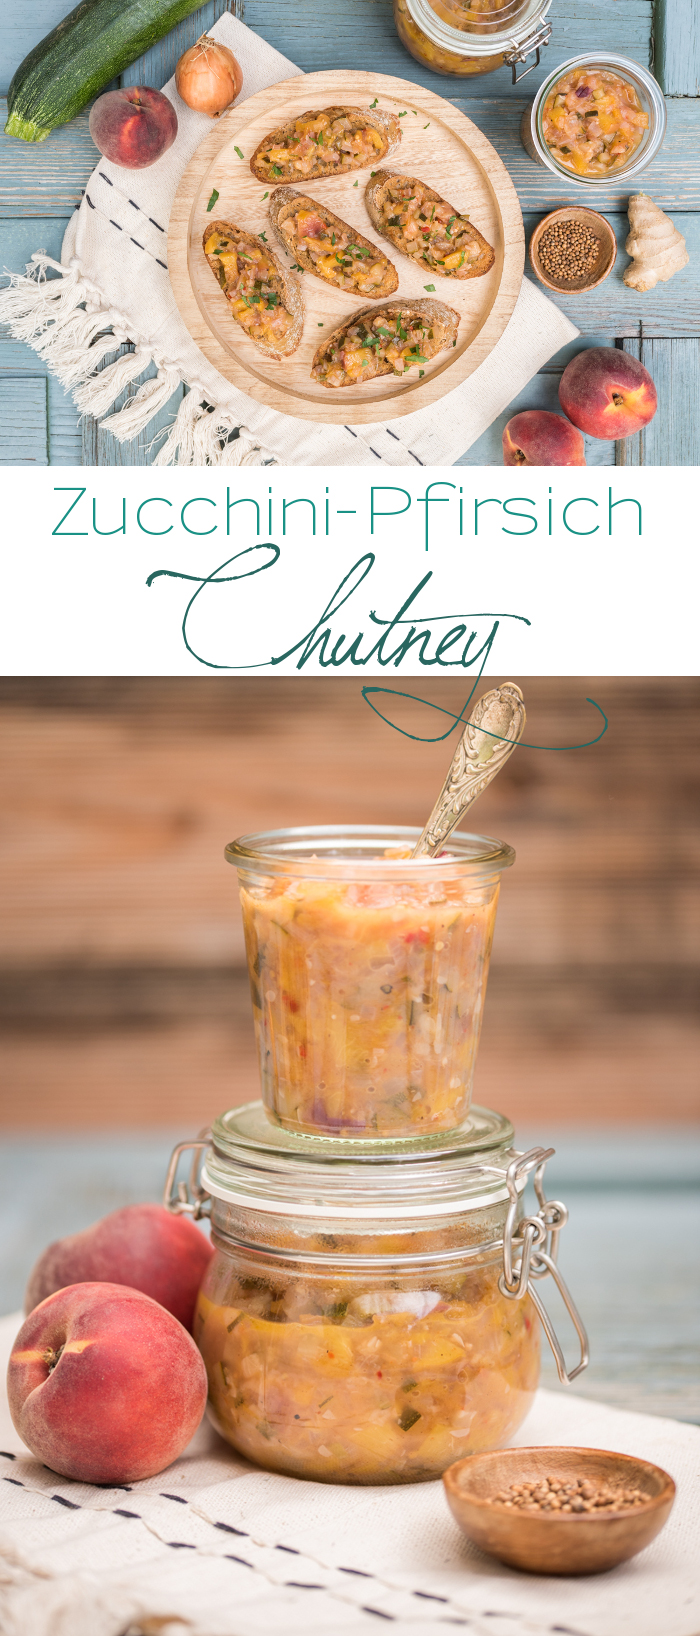 Rezept für Zucchini Pfirsich Chutney mit Koriander und Kreuzkümmel ohne Haushaltszucker für Crostini oder als Sauce zum Grillen